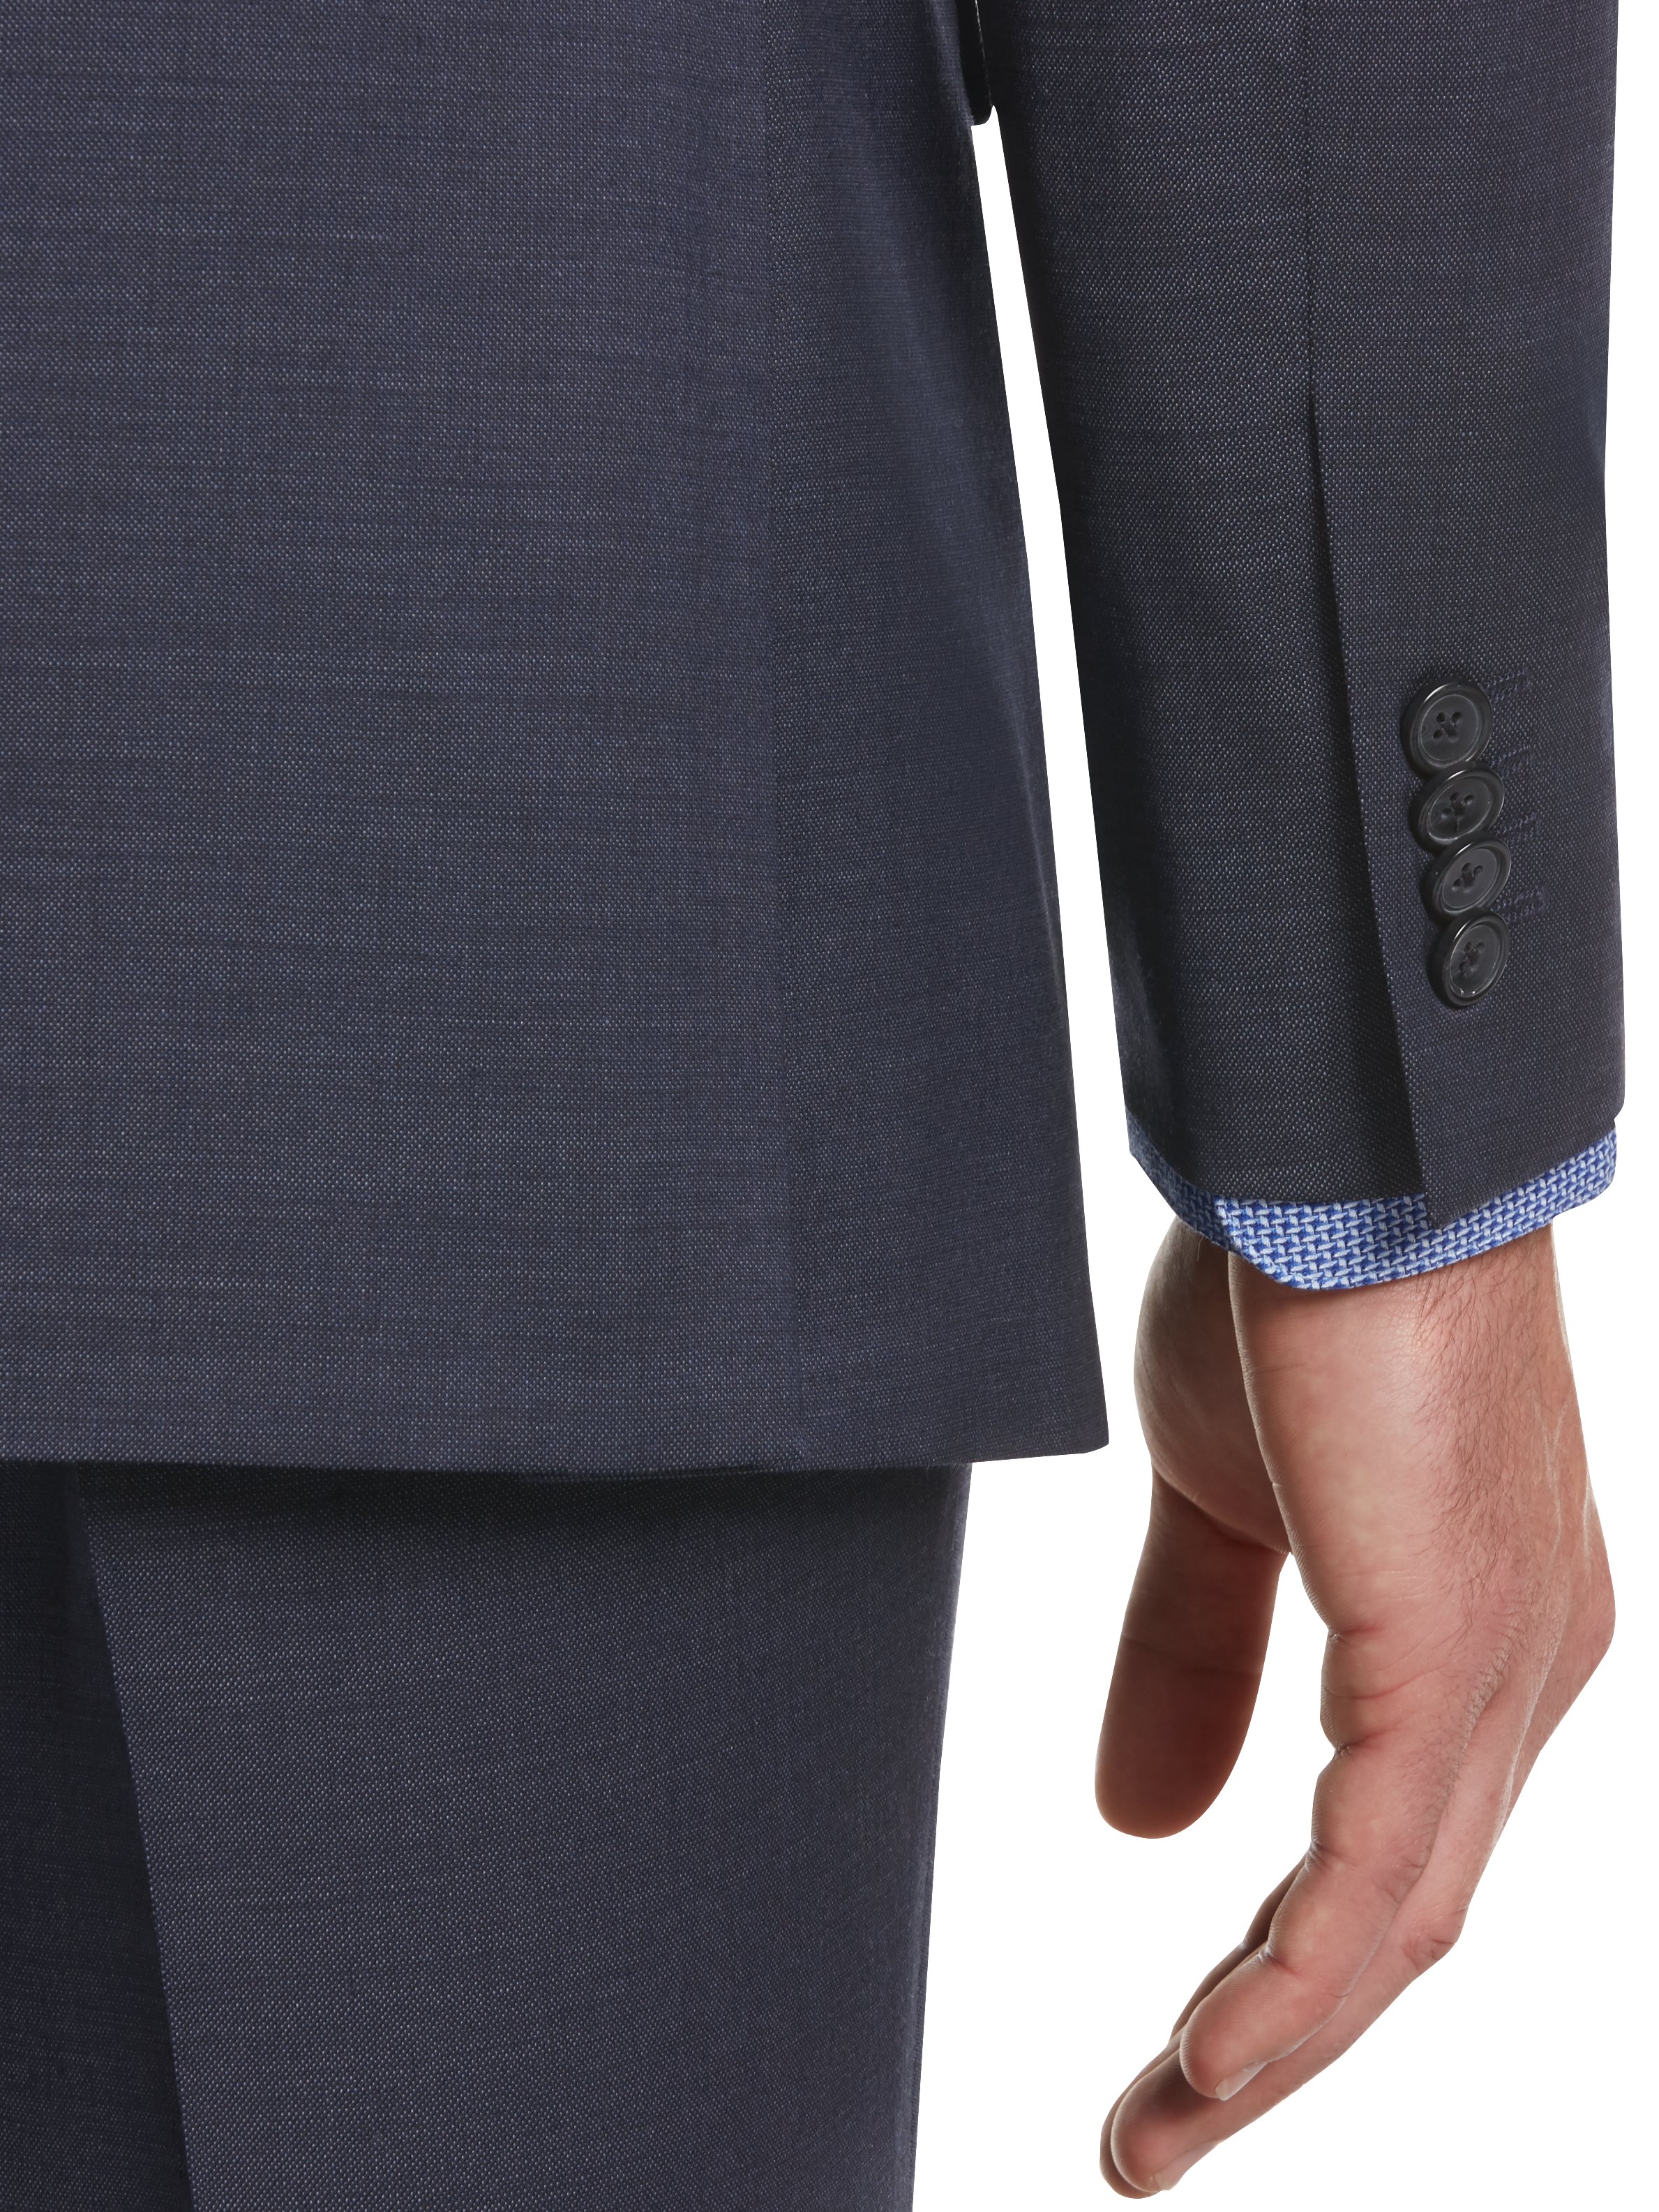 Executive Fit Suit Separates Jacket